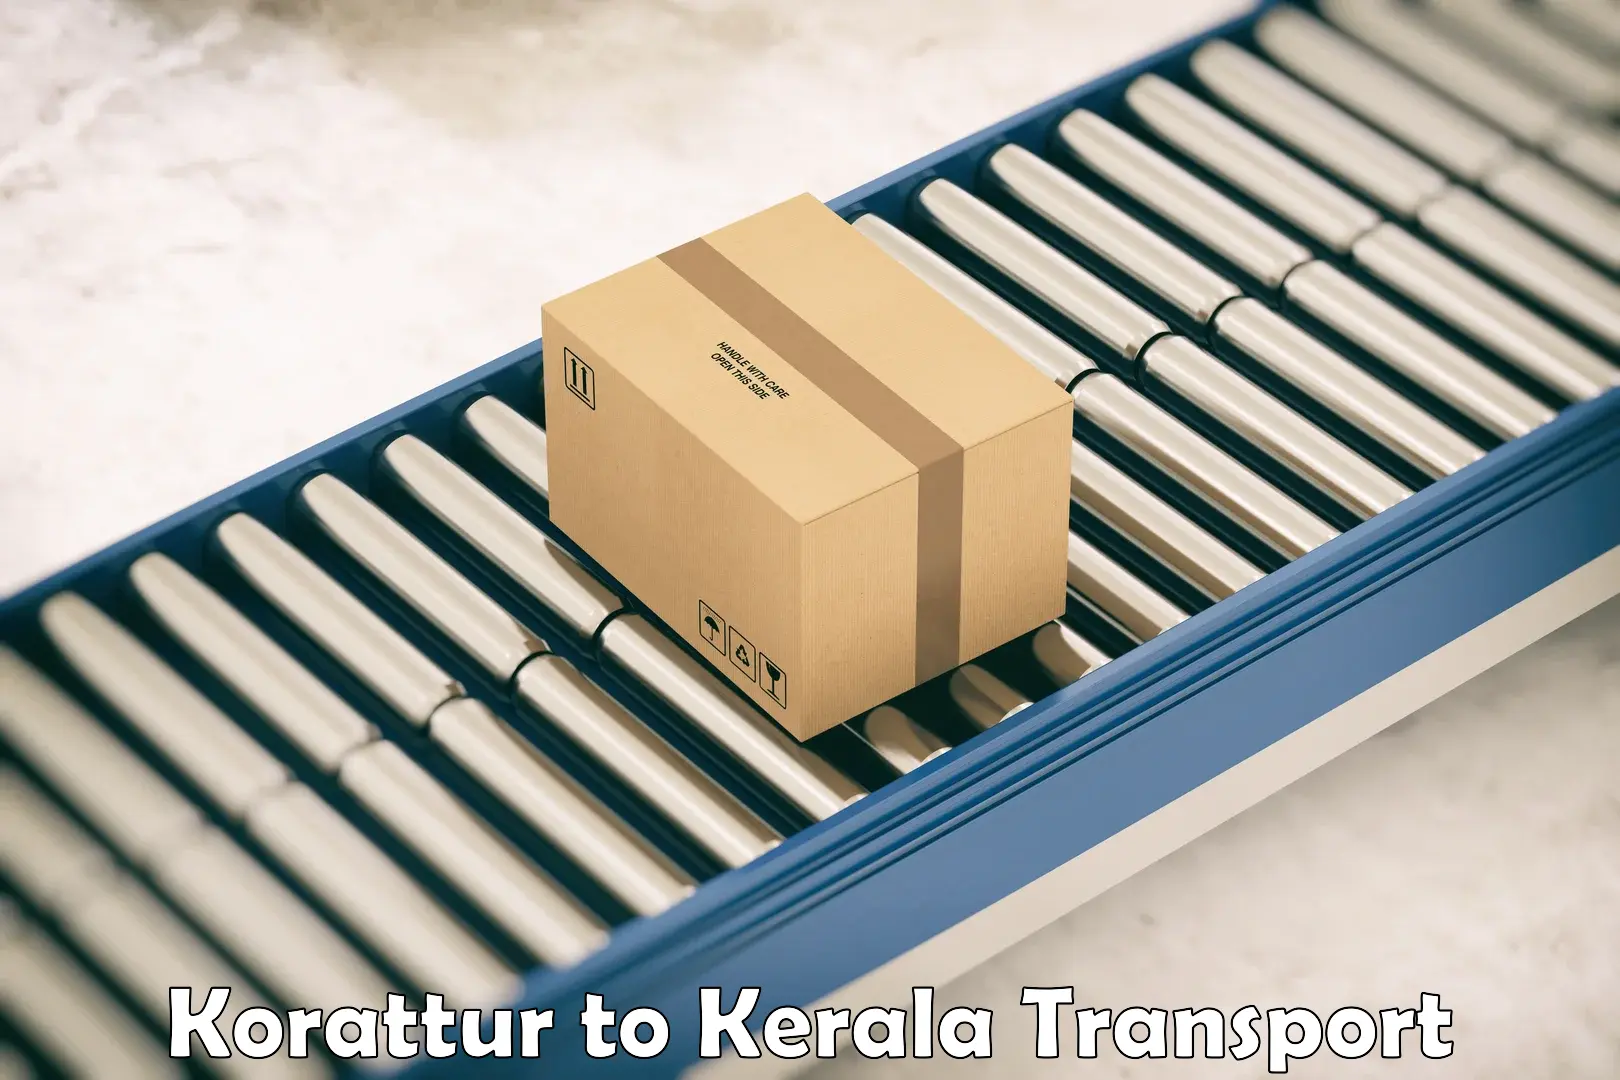 Shipping partner Korattur to IIT Palakkad